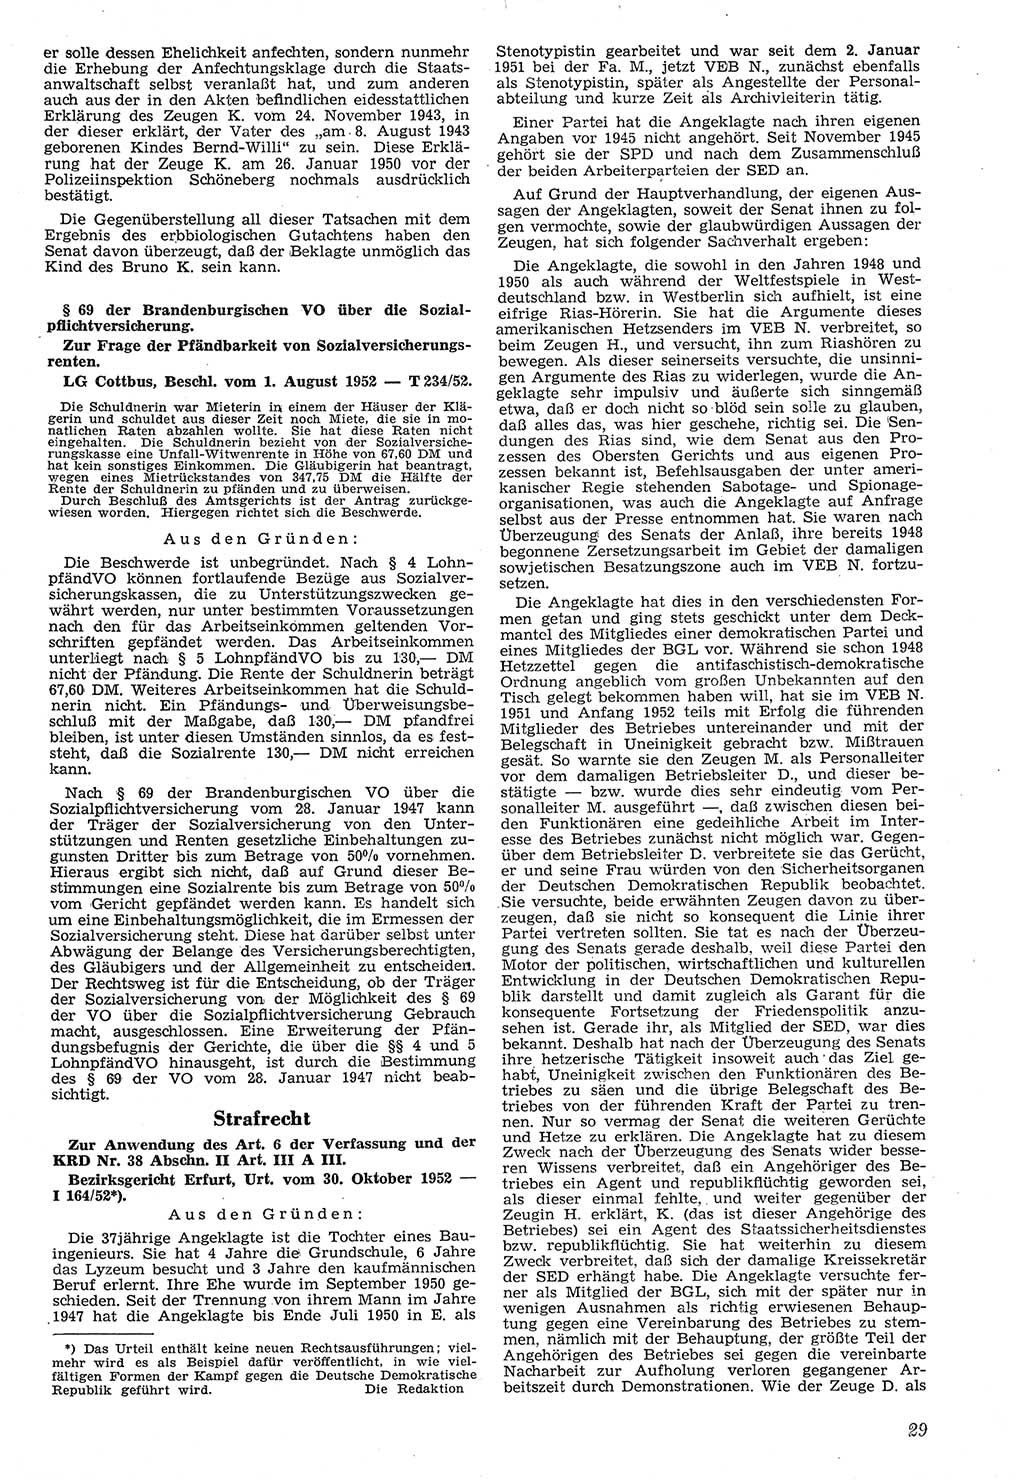 Neue Justiz (NJ), Zeitschrift für Recht und Rechtswissenschaft [Deutsche Demokratische Republik (DDR)], 7. Jahrgang 1953, Seite 29 (NJ DDR 1953, S. 29)